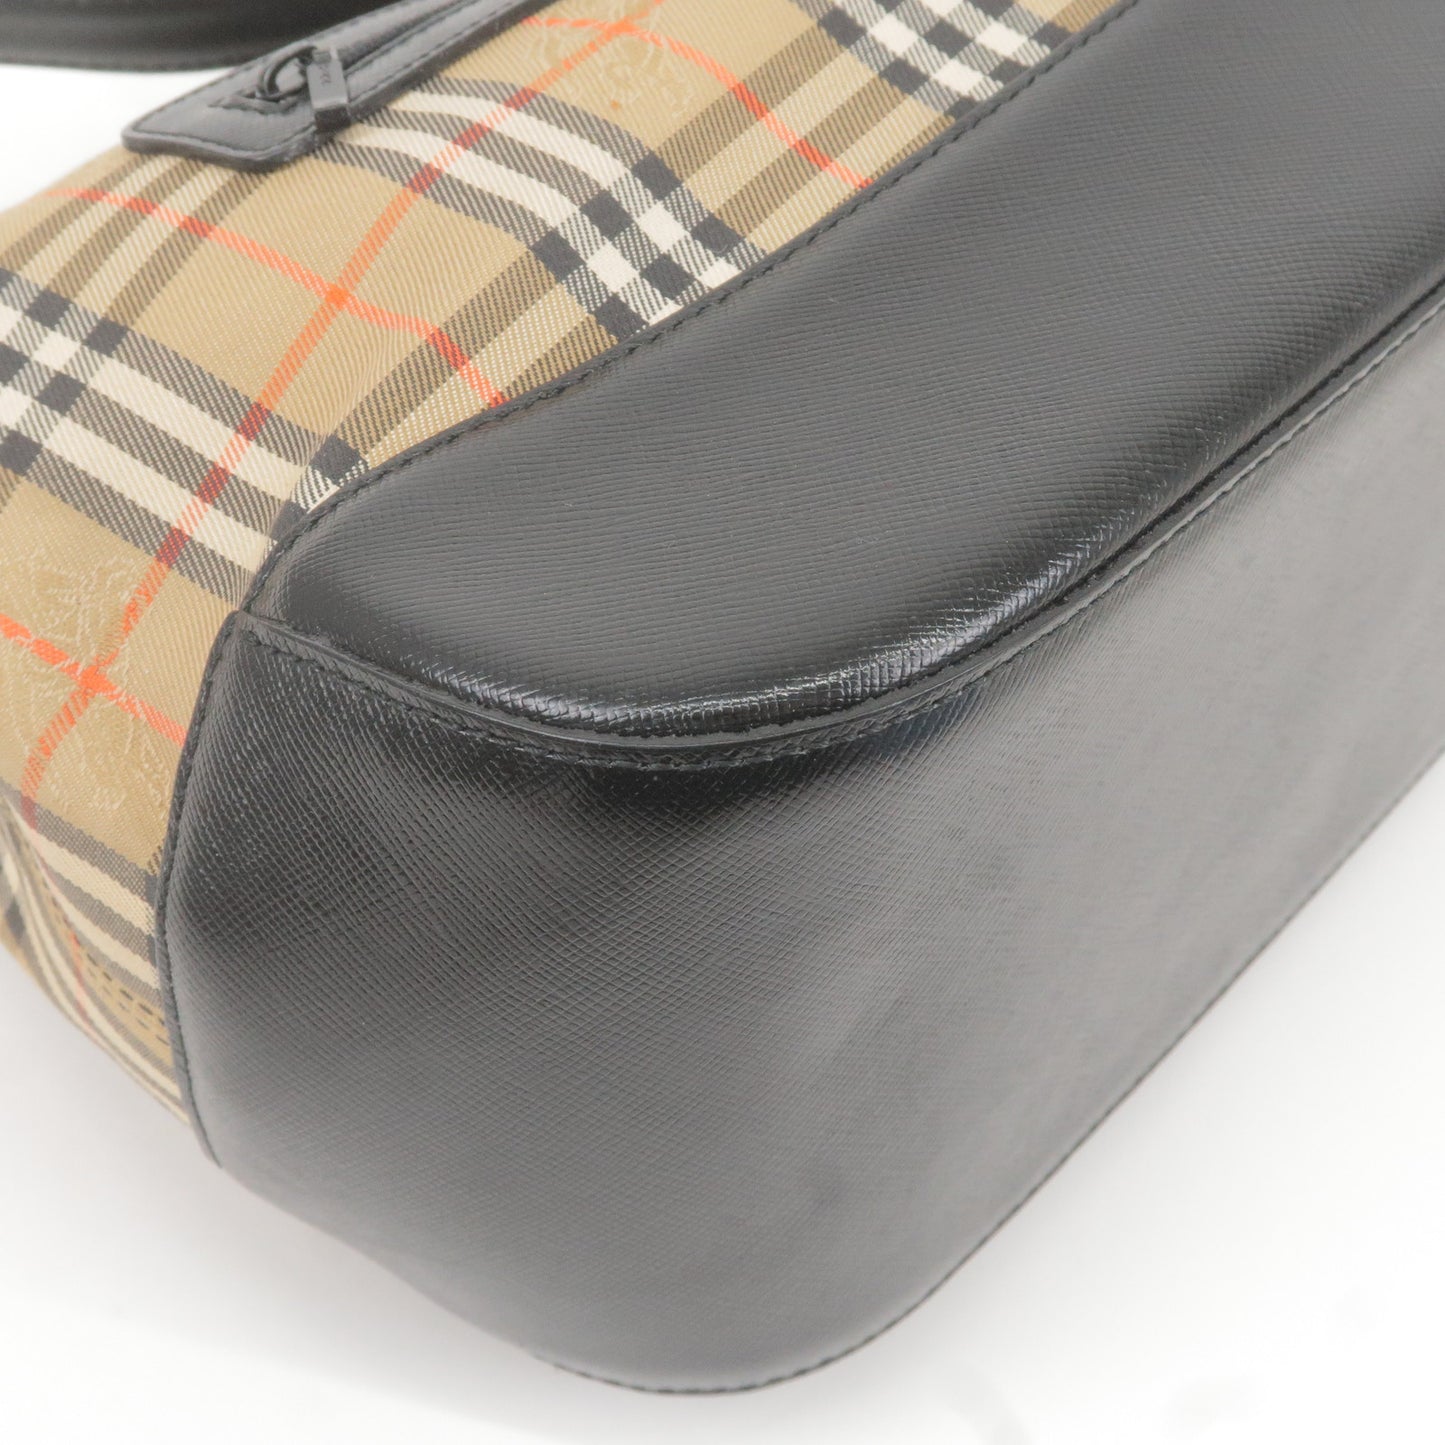 BURBERRY Nova Plaid Canvas Leather Shoulder Bag Hand Bag